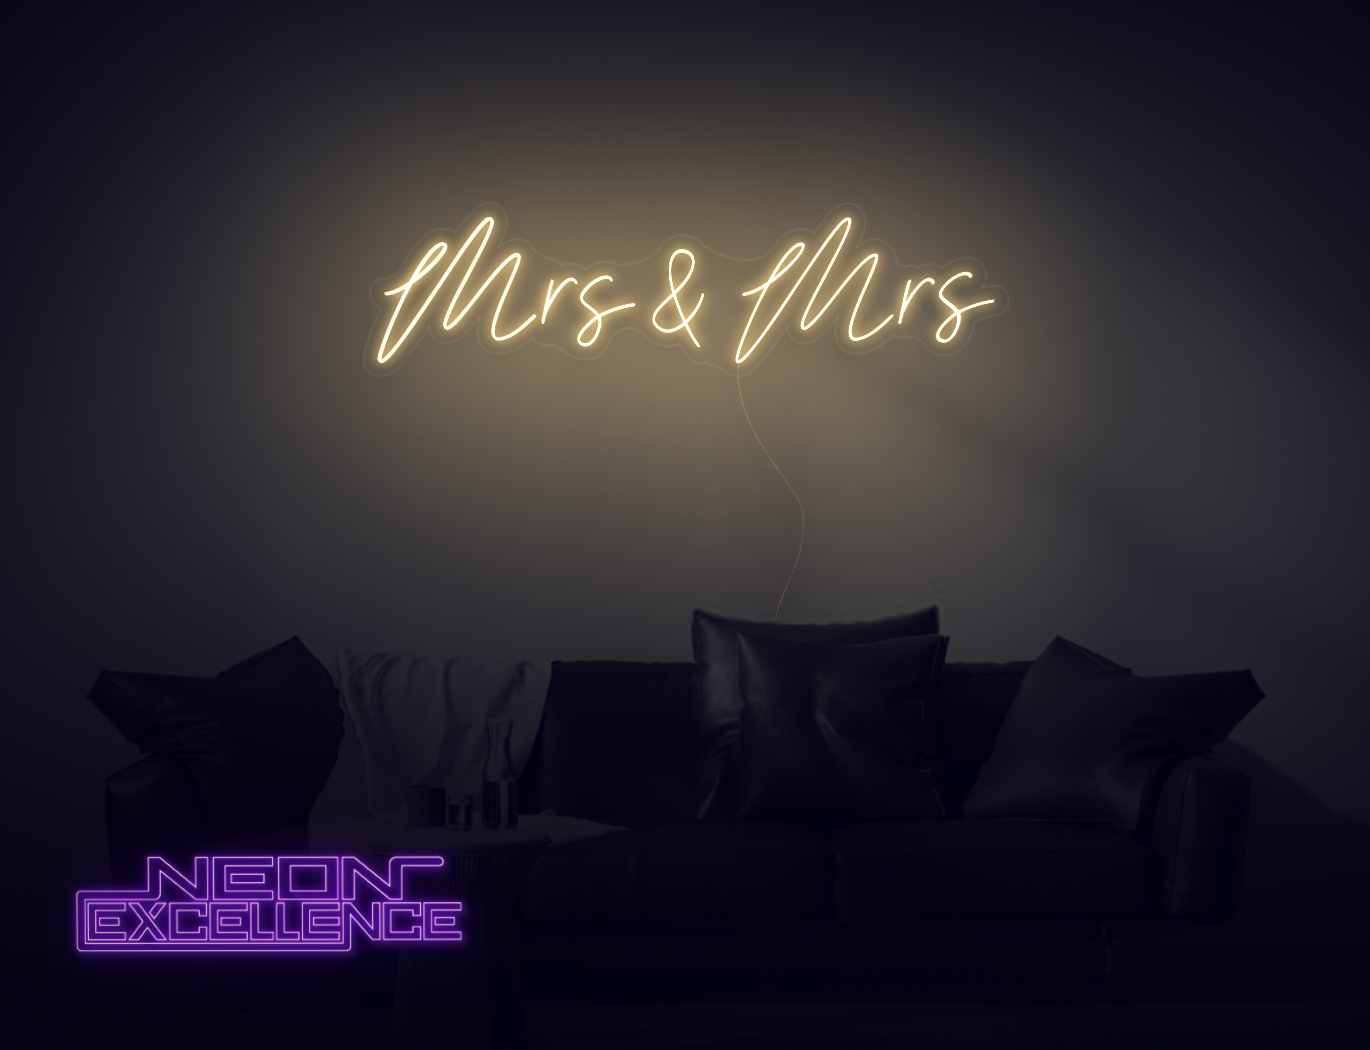 Mrs & Mrs LED Neon Sign